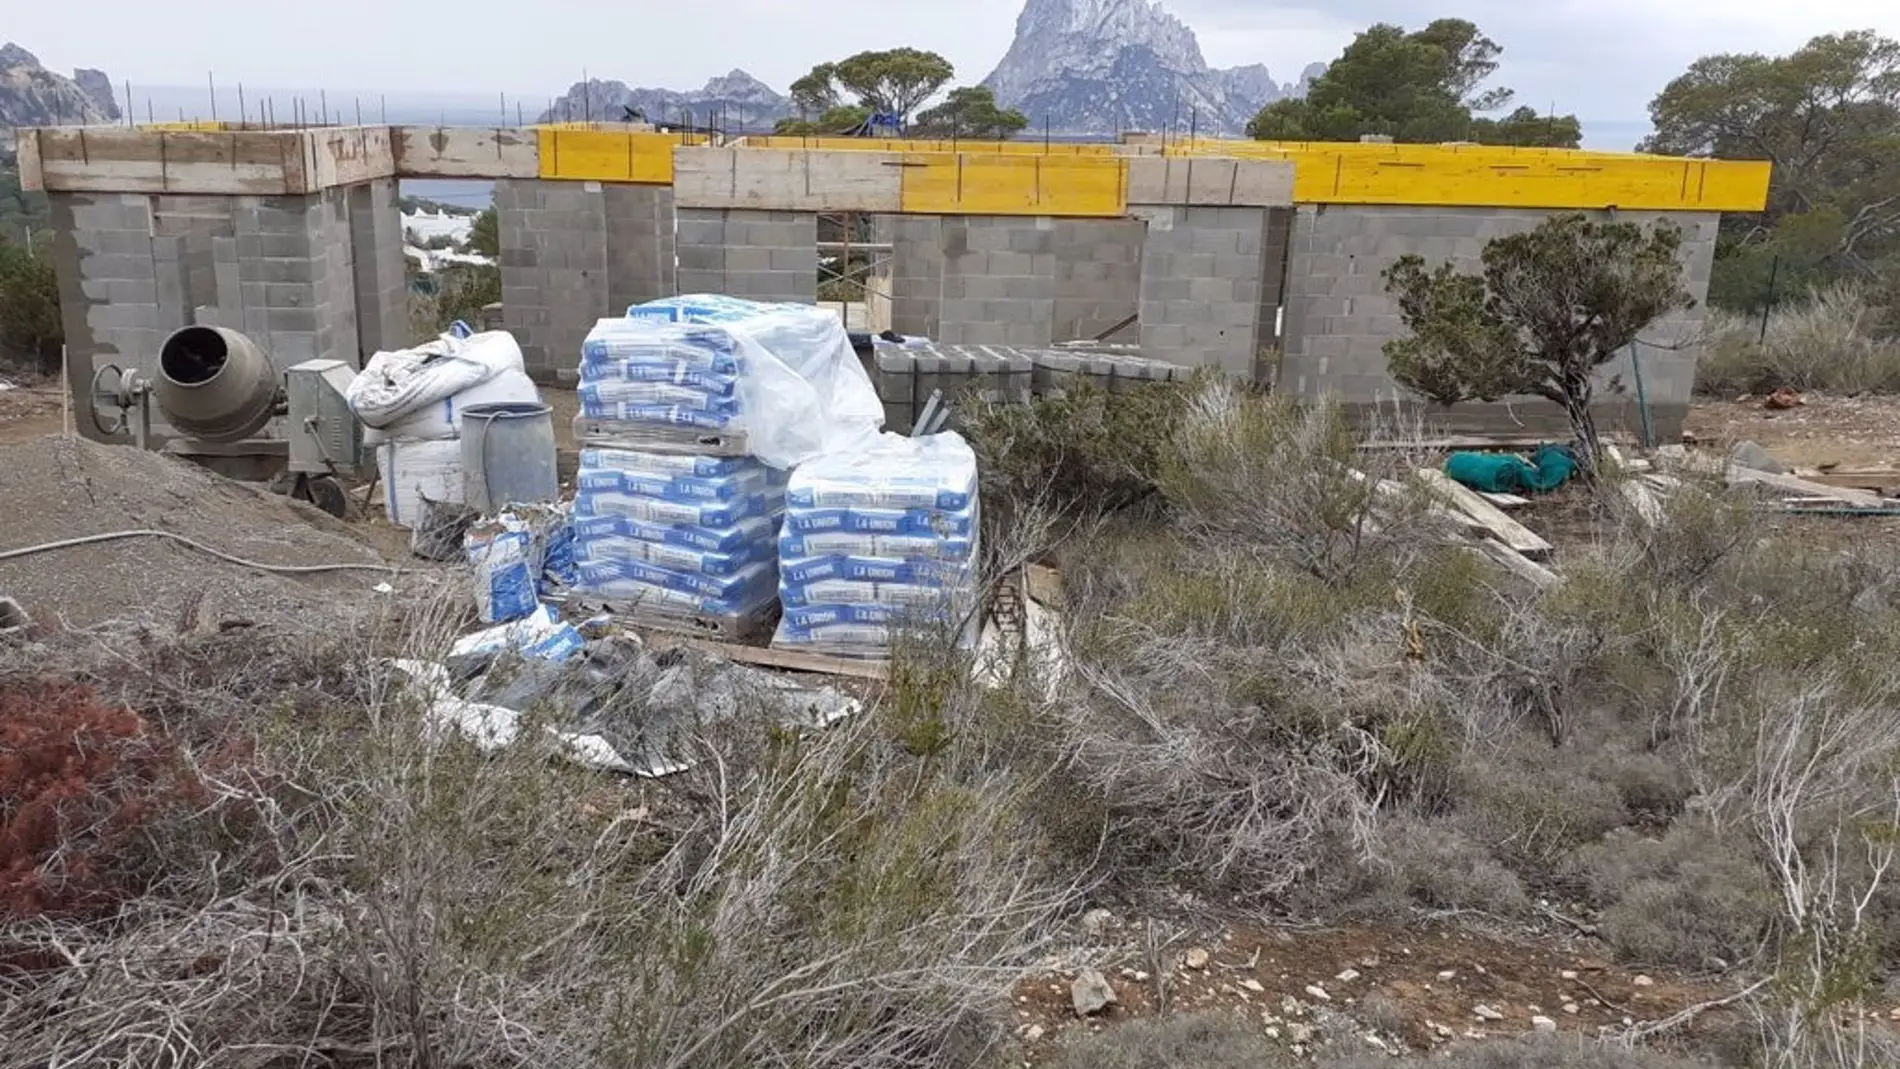 Derriban una casa ilegal que se construía en una finca protegida de Cala d'Hort en Ibiza